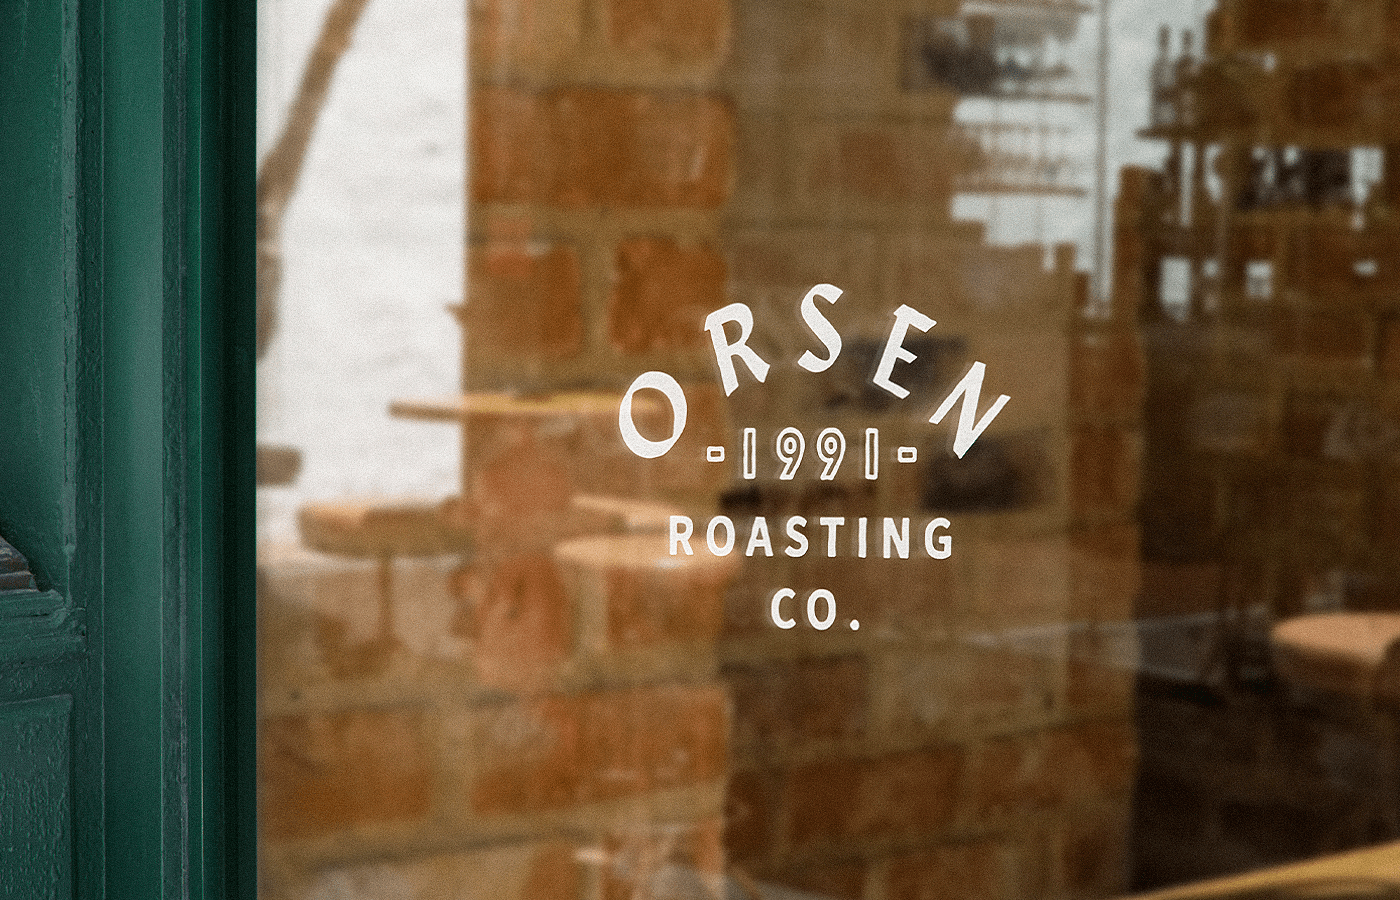 Orsen Coffee Roasters branding and packaging by Nikita Maslov